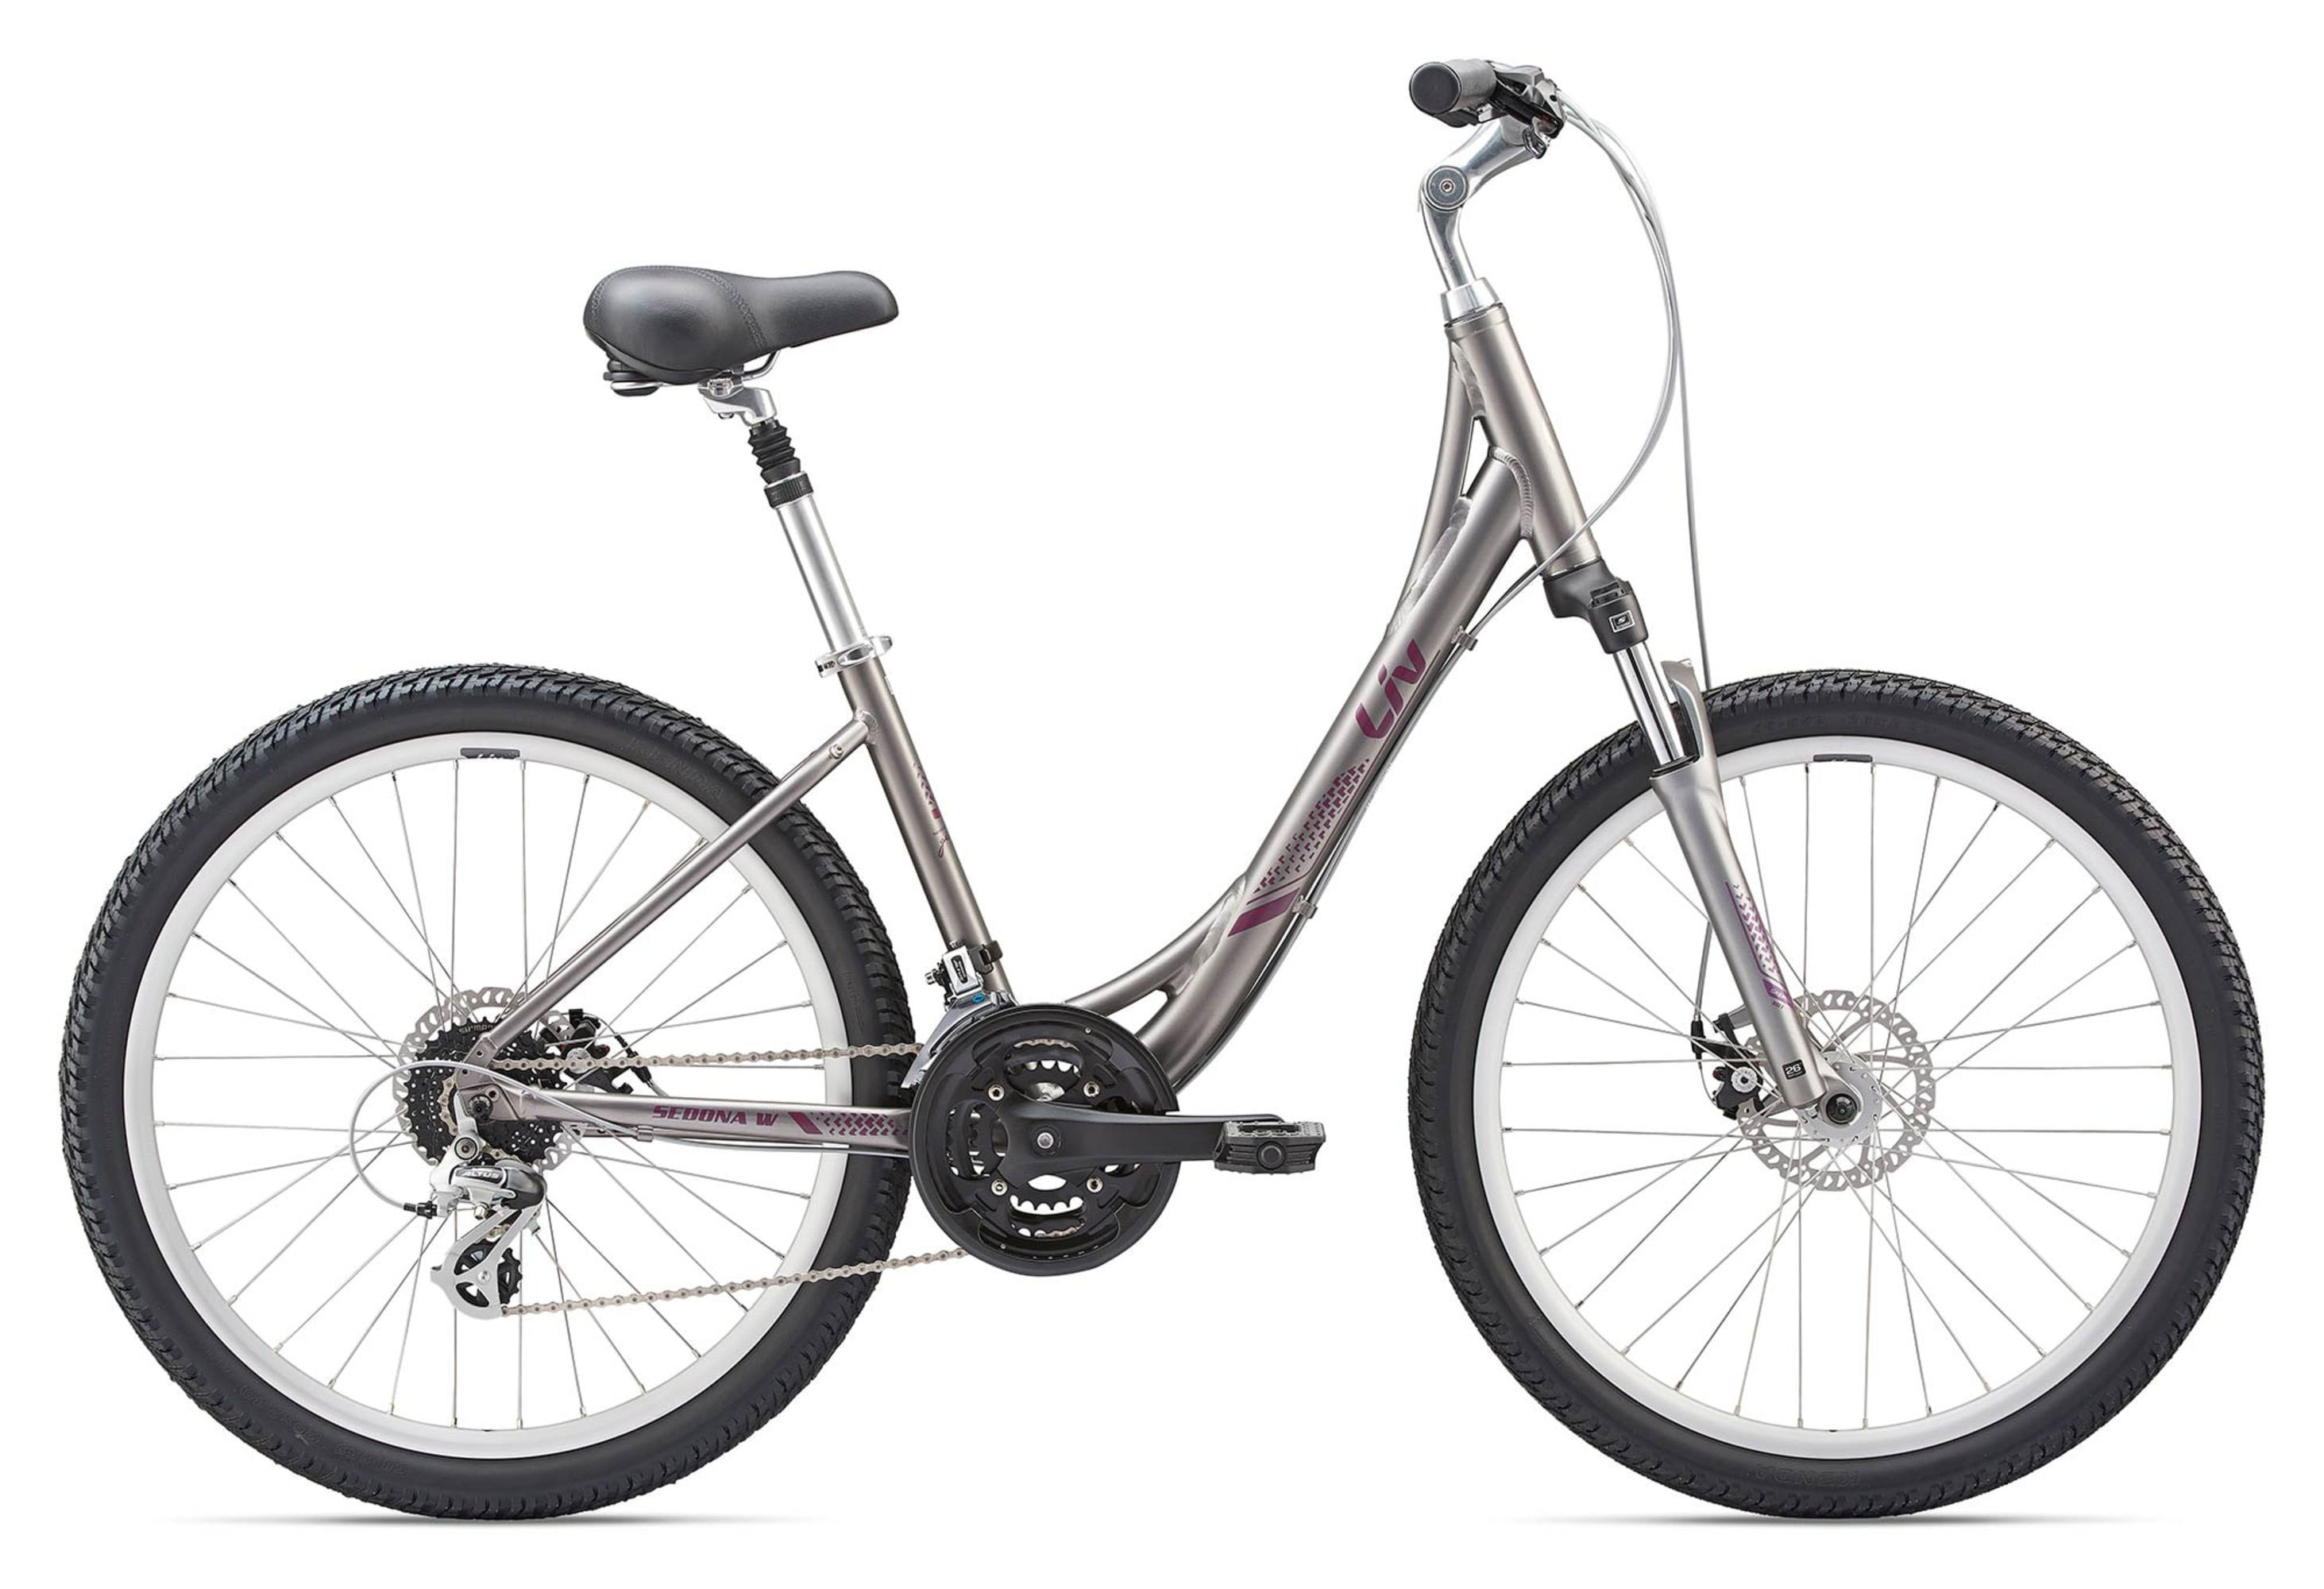  Велосипед Giant Sedona DX W 2020